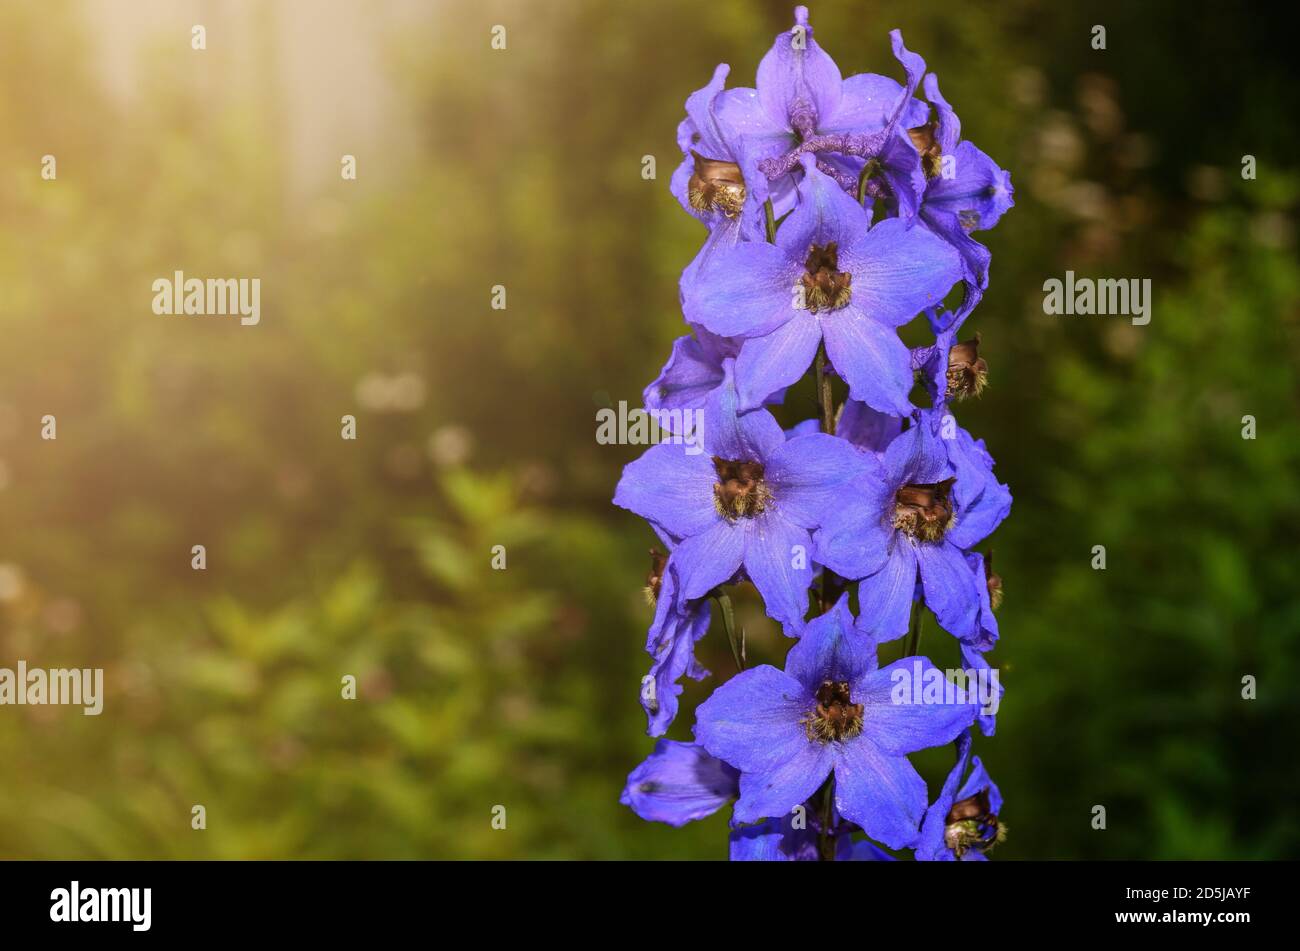 Delphinium es una hermosa flor azul que ama mucho el sol. Foto de stock